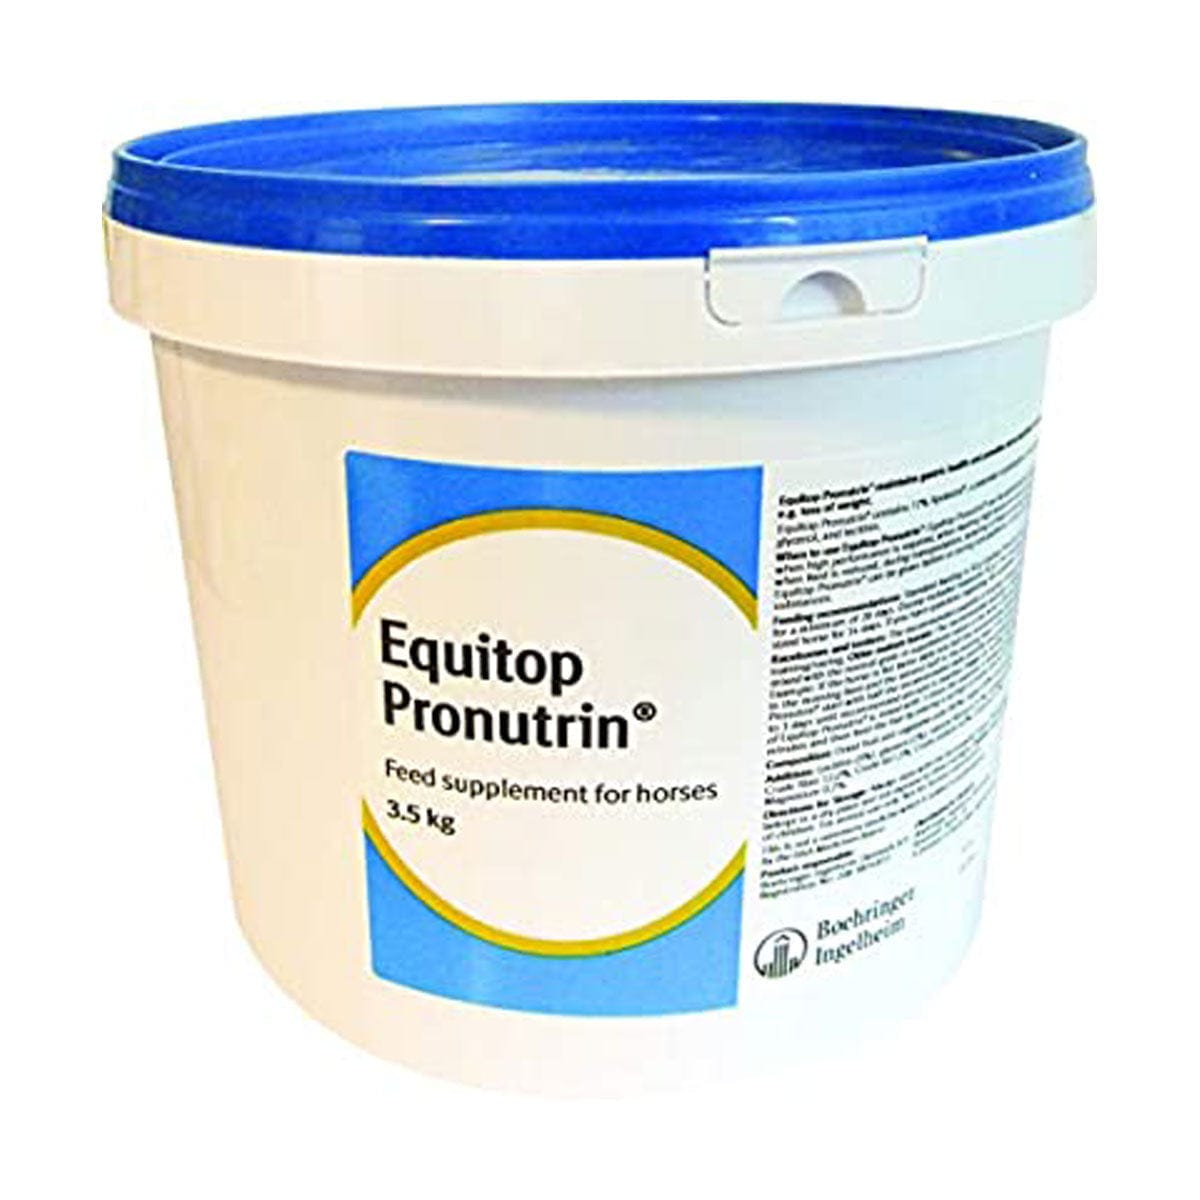 Equitop® pronutrin